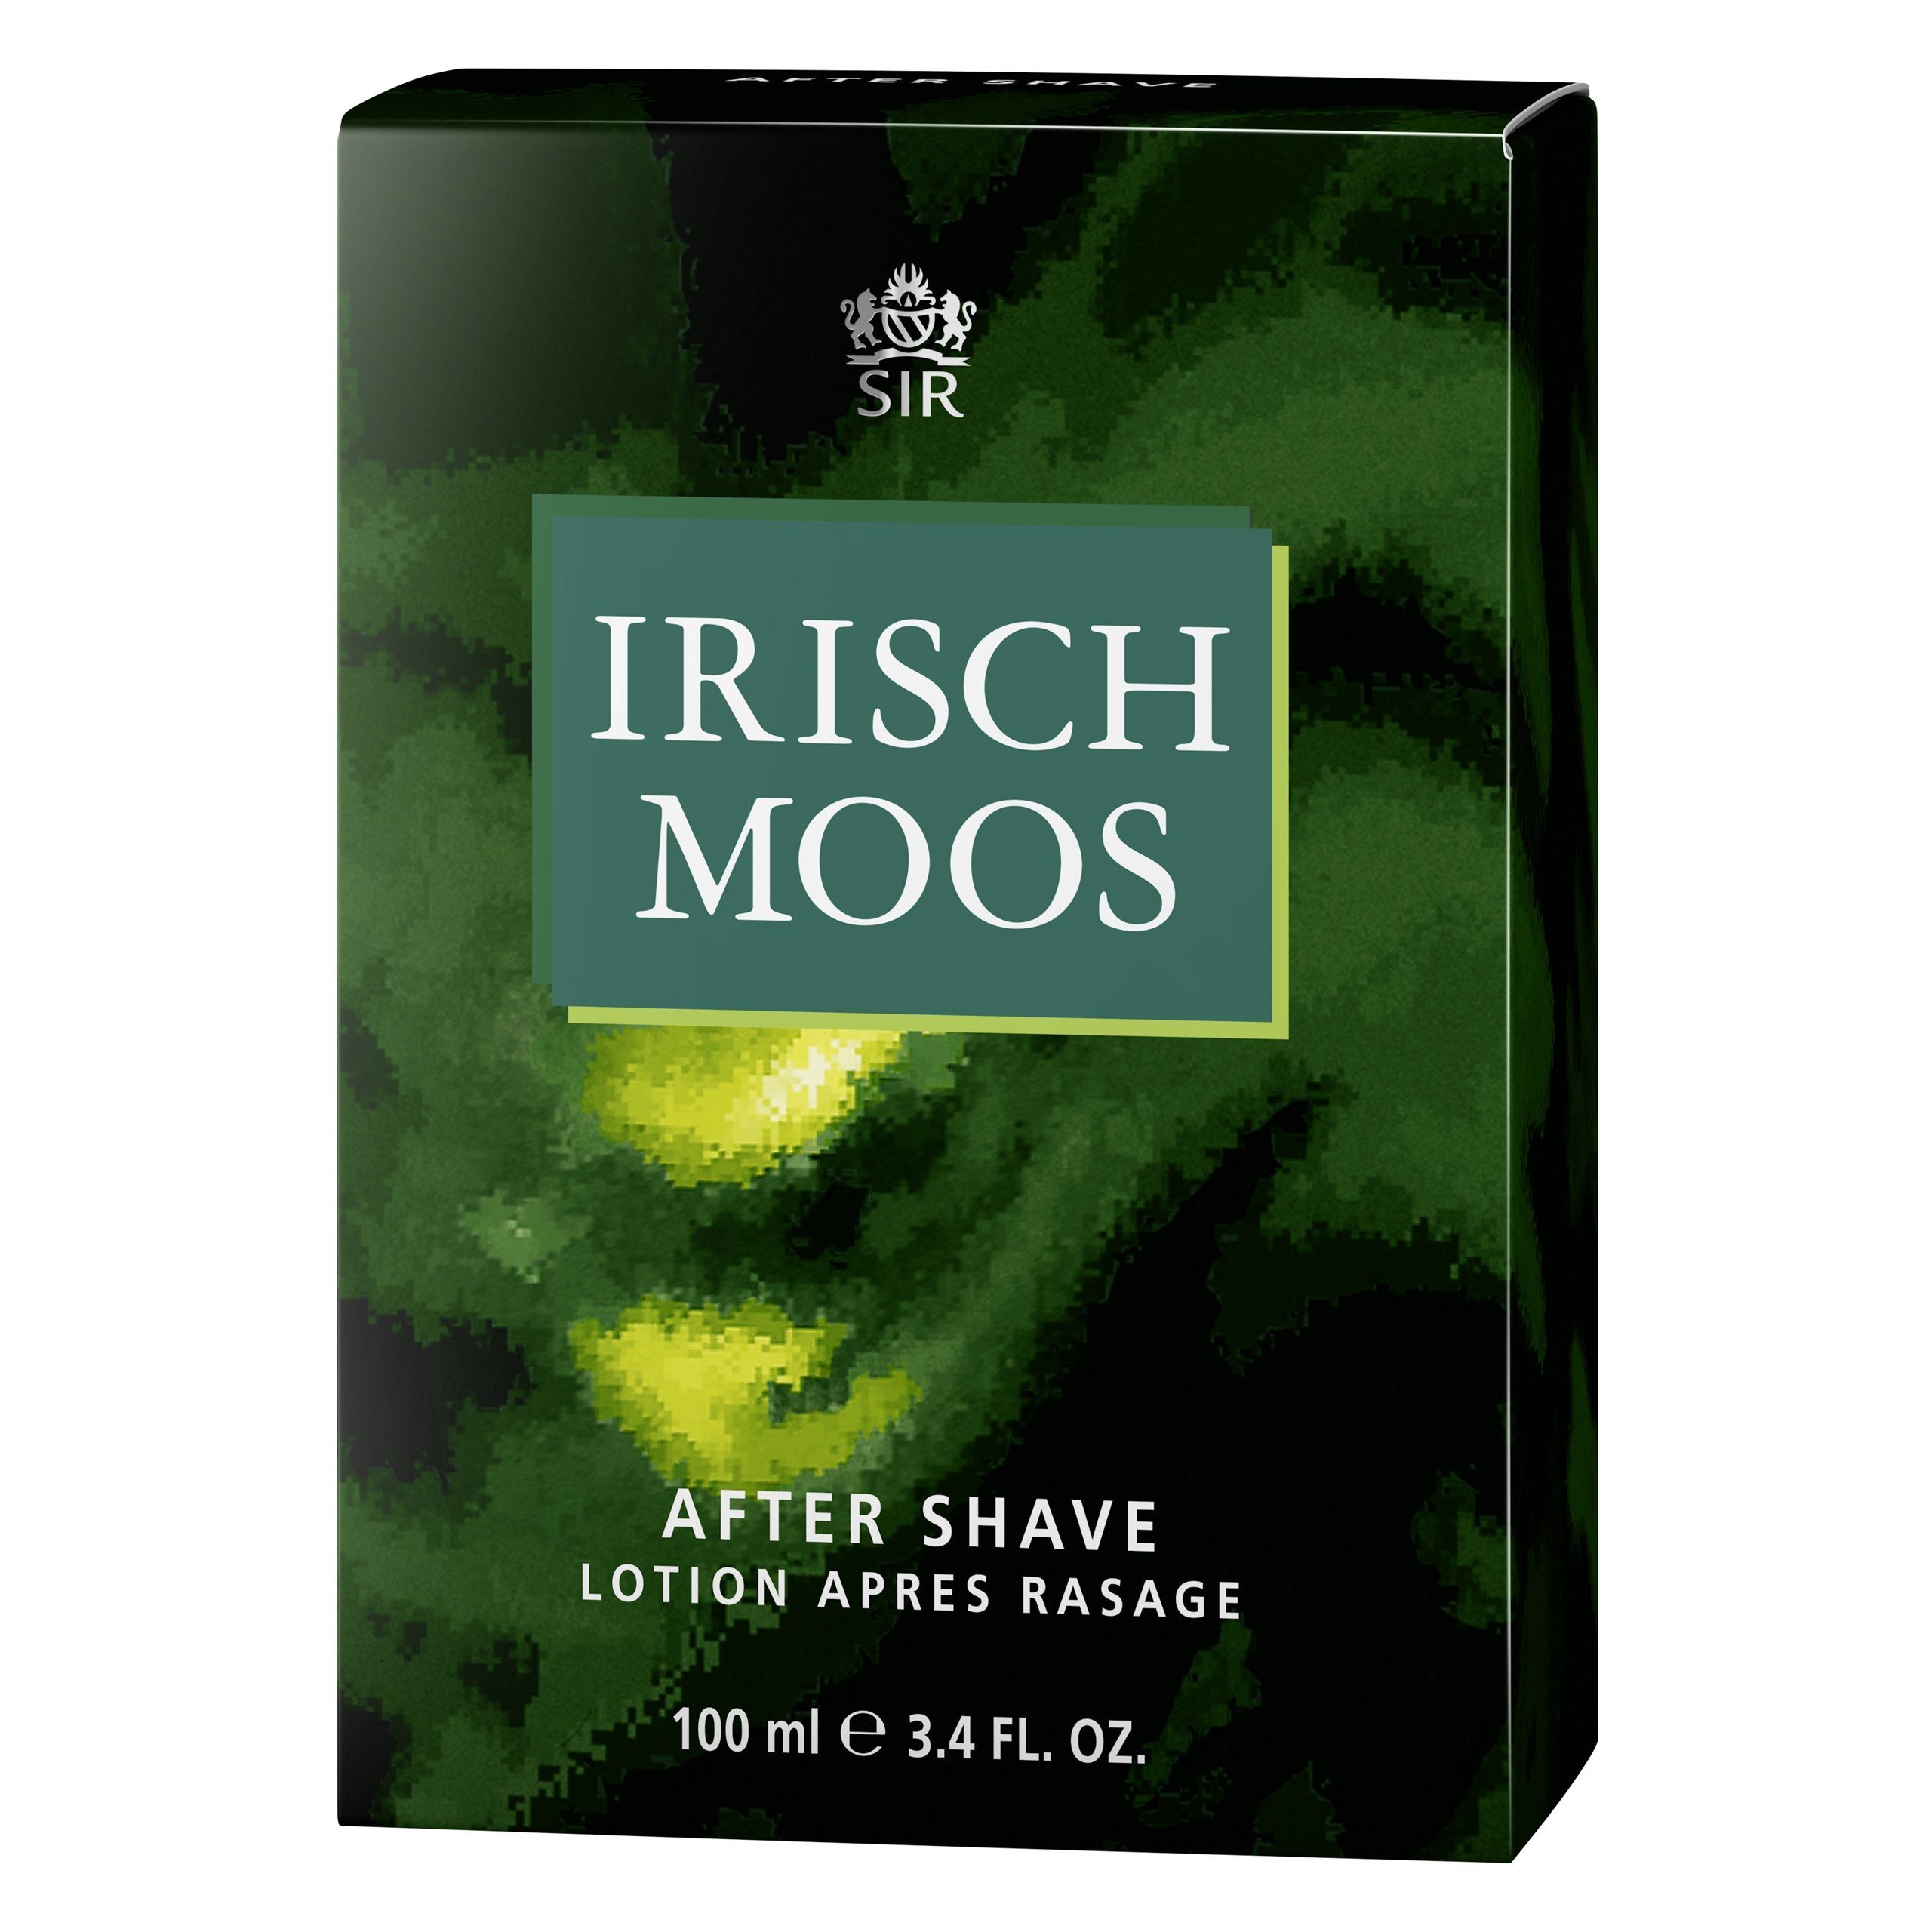 Sir Irisch Moos Gesichts-Reinigungslotion SIR Shave IRISCH ml MOOS 100 After Lotion